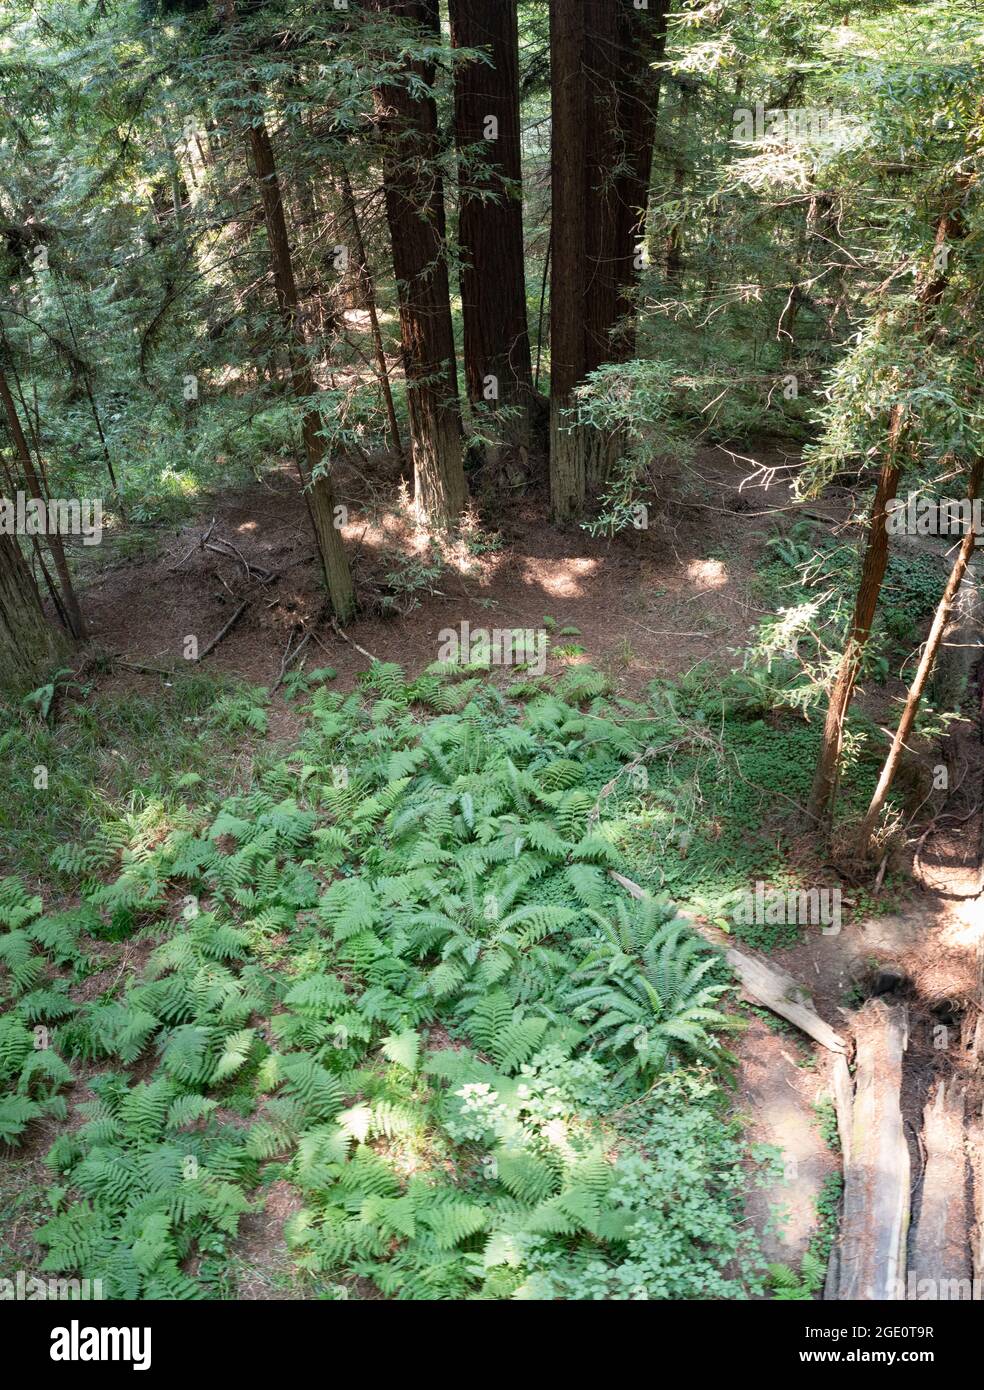 Gli alberi costieri di sequoia crescono in una foresta sana nella contea di Mendocino, California del Nord. Questa regione ospita il maggior numero di alberi a crescita antica. Foto Stock